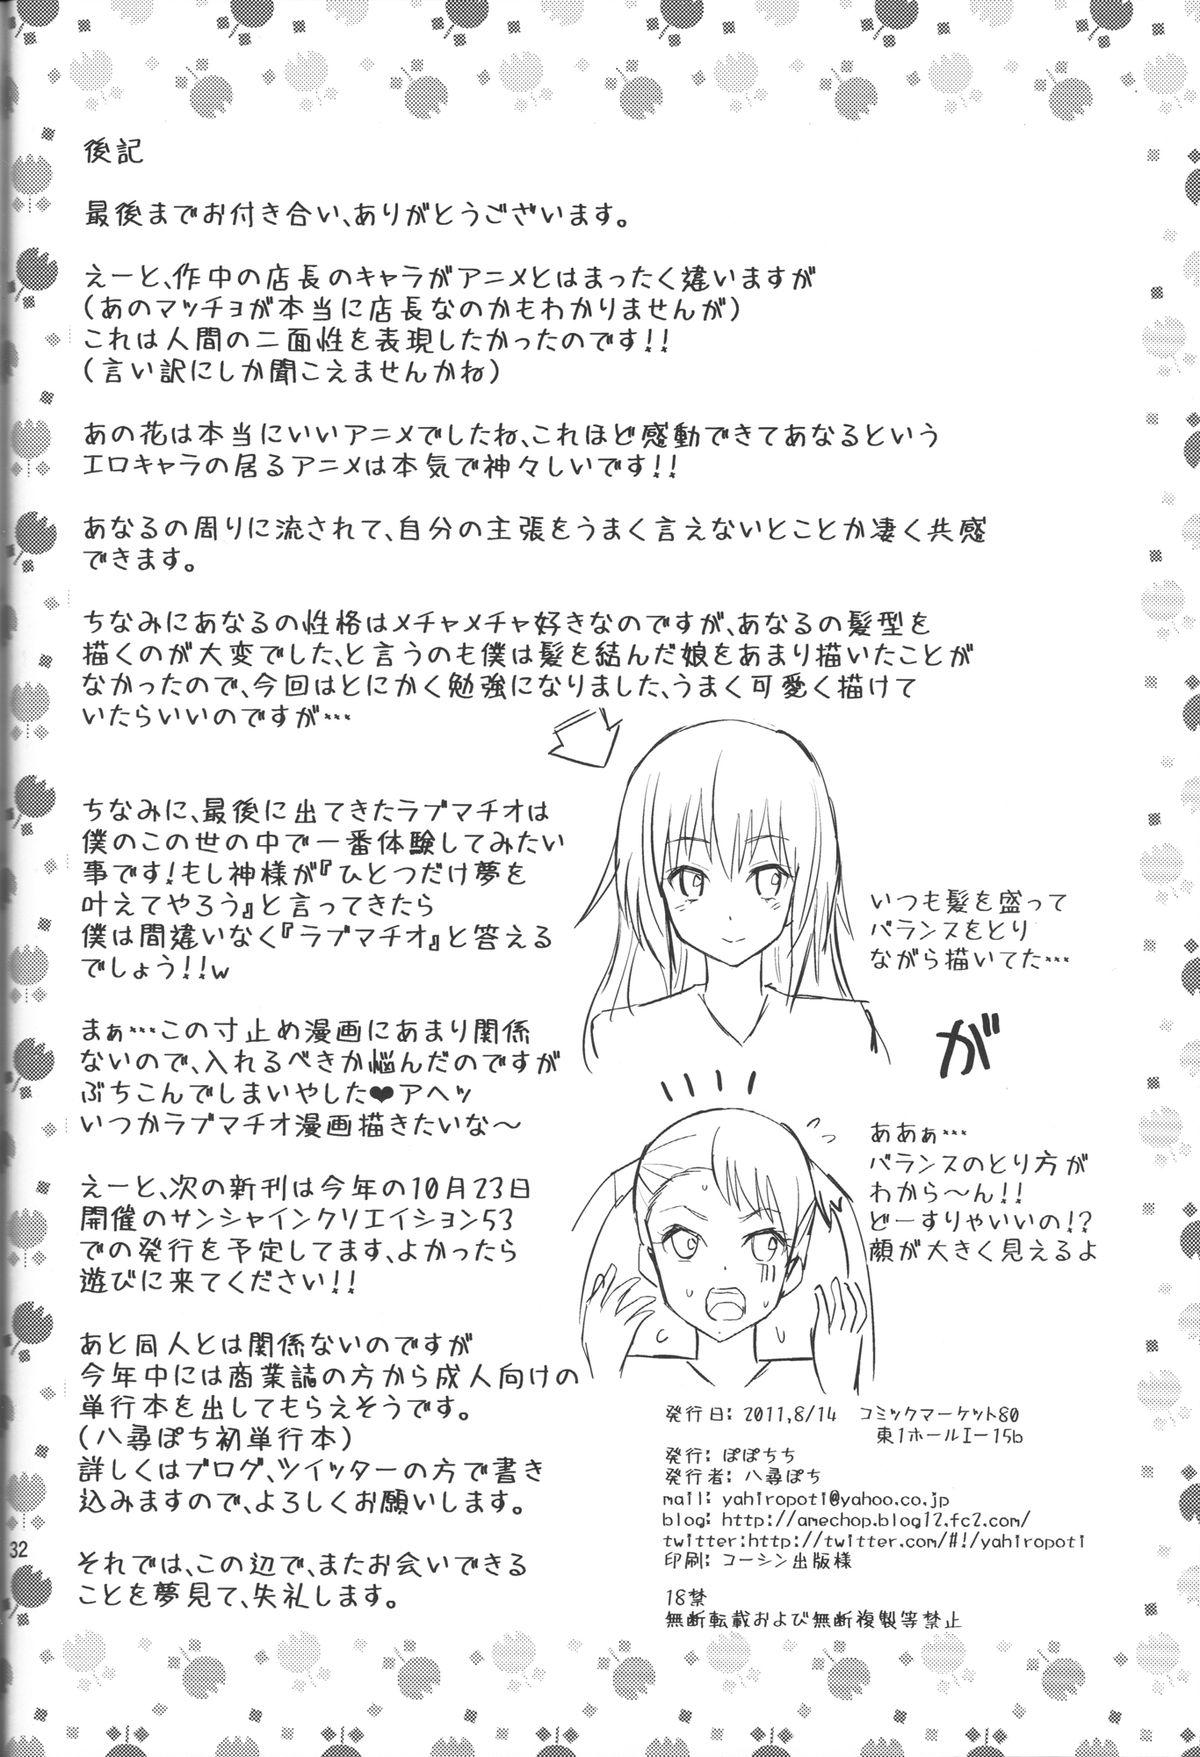 Ano Anaru no Sundome Manga o Bokutachi wa Mada Shiranai. 31